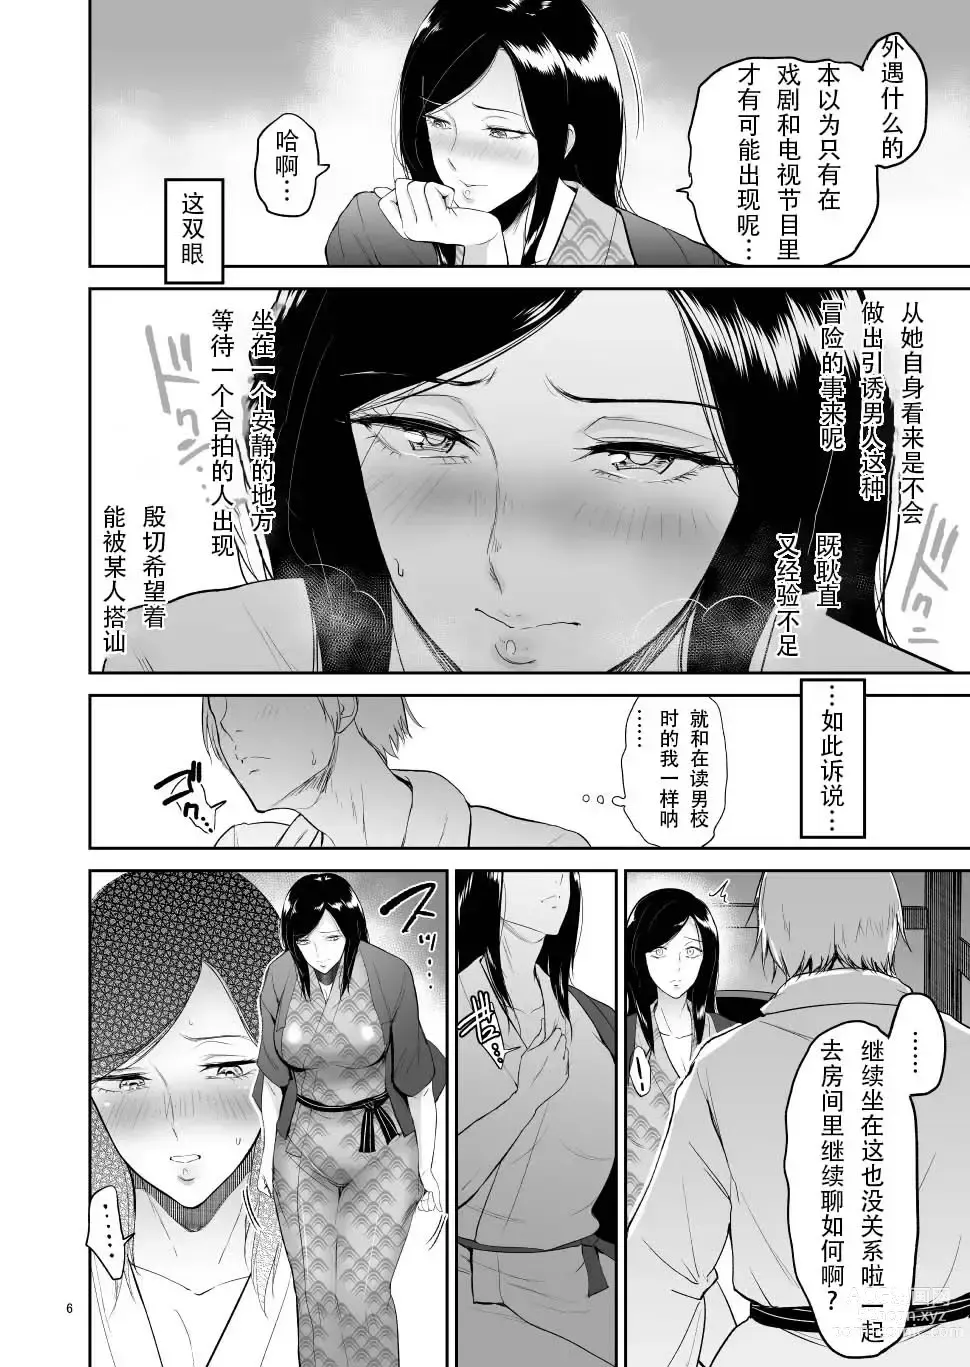 Page 5 of doujinshi asfsfascas